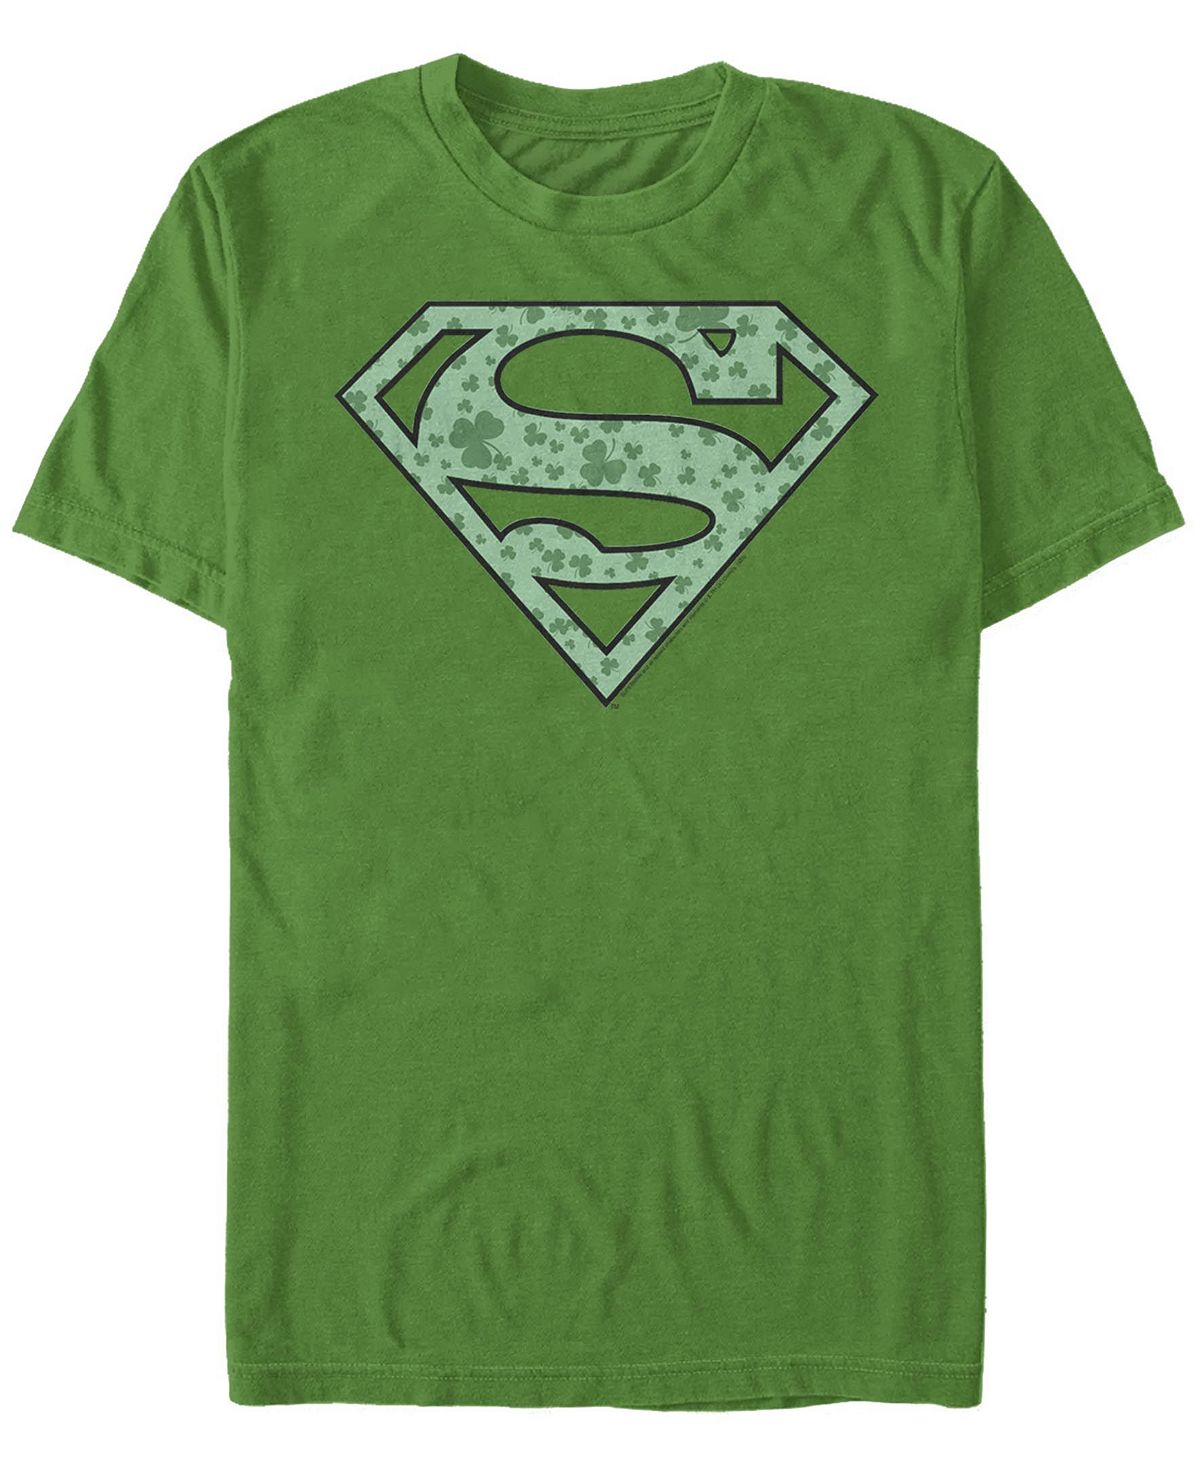 Мужская футболка superman shamrock с круглым вырезом и короткими рукавами Fifth Sun